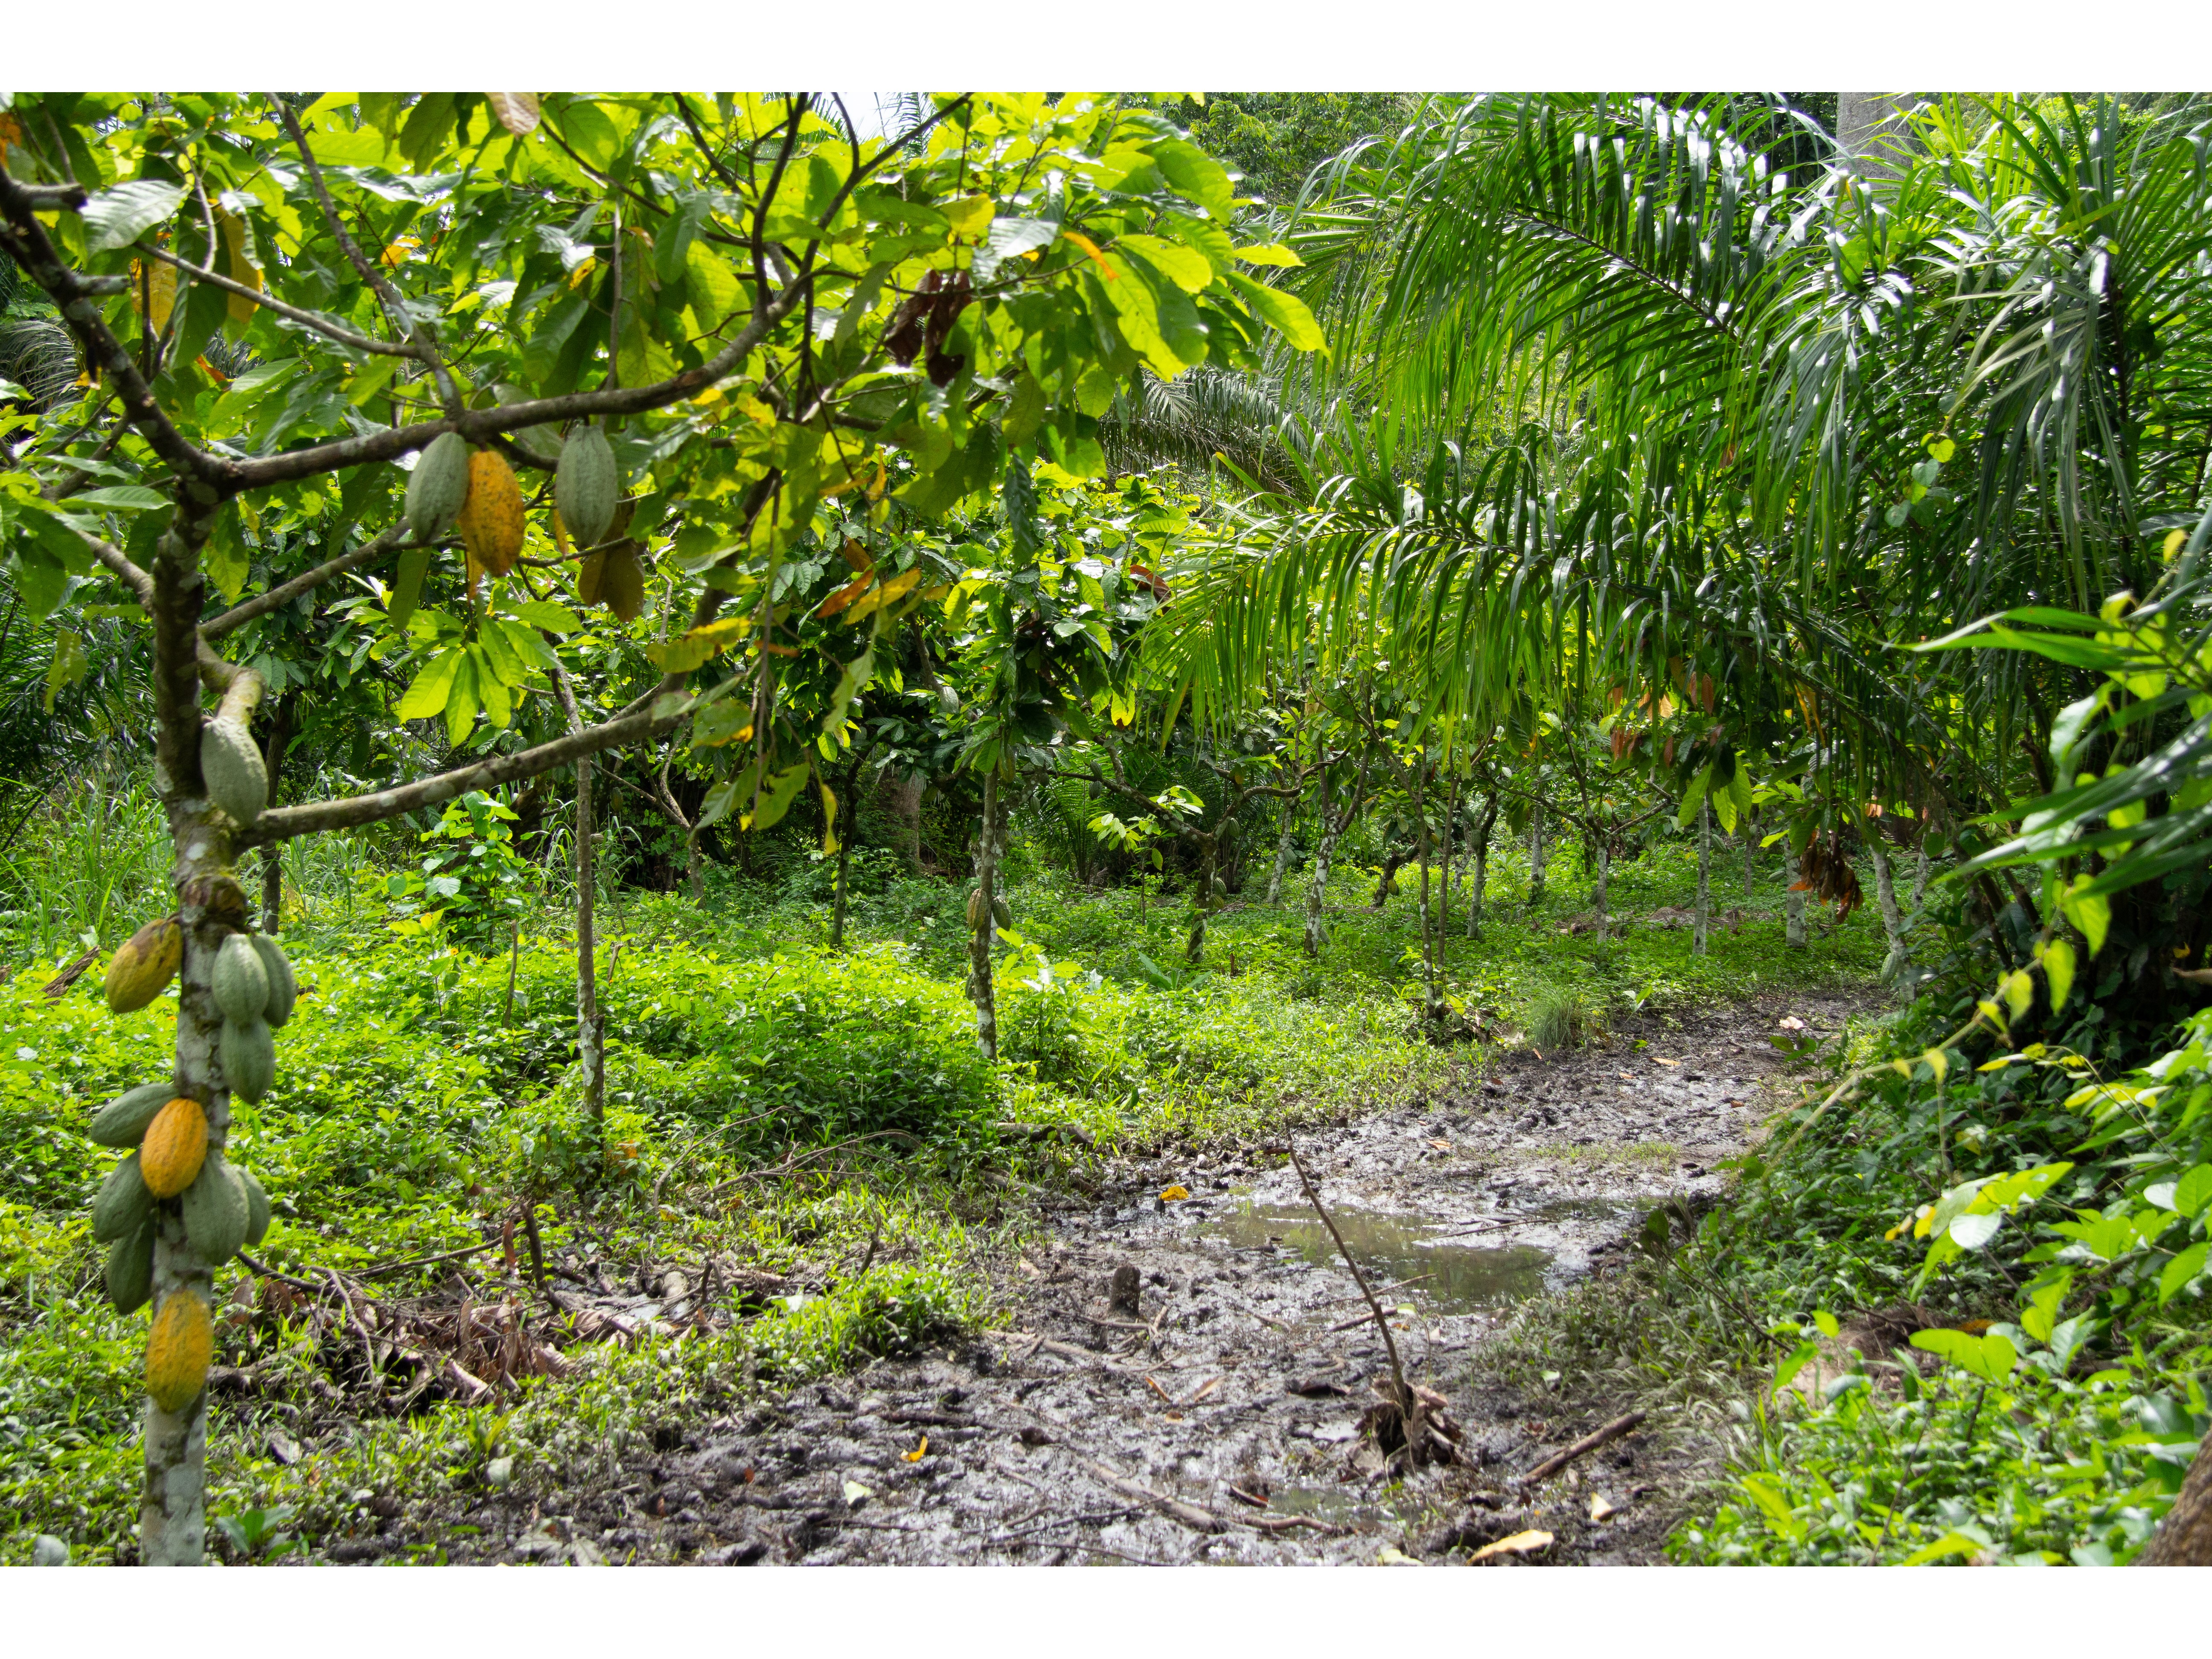 Le cacao pousse volontiers dans les sous-bois ombragés des forêts tropicales. Au Togo, certains producteurs parviennent à cultiver de manière assez naturelle.